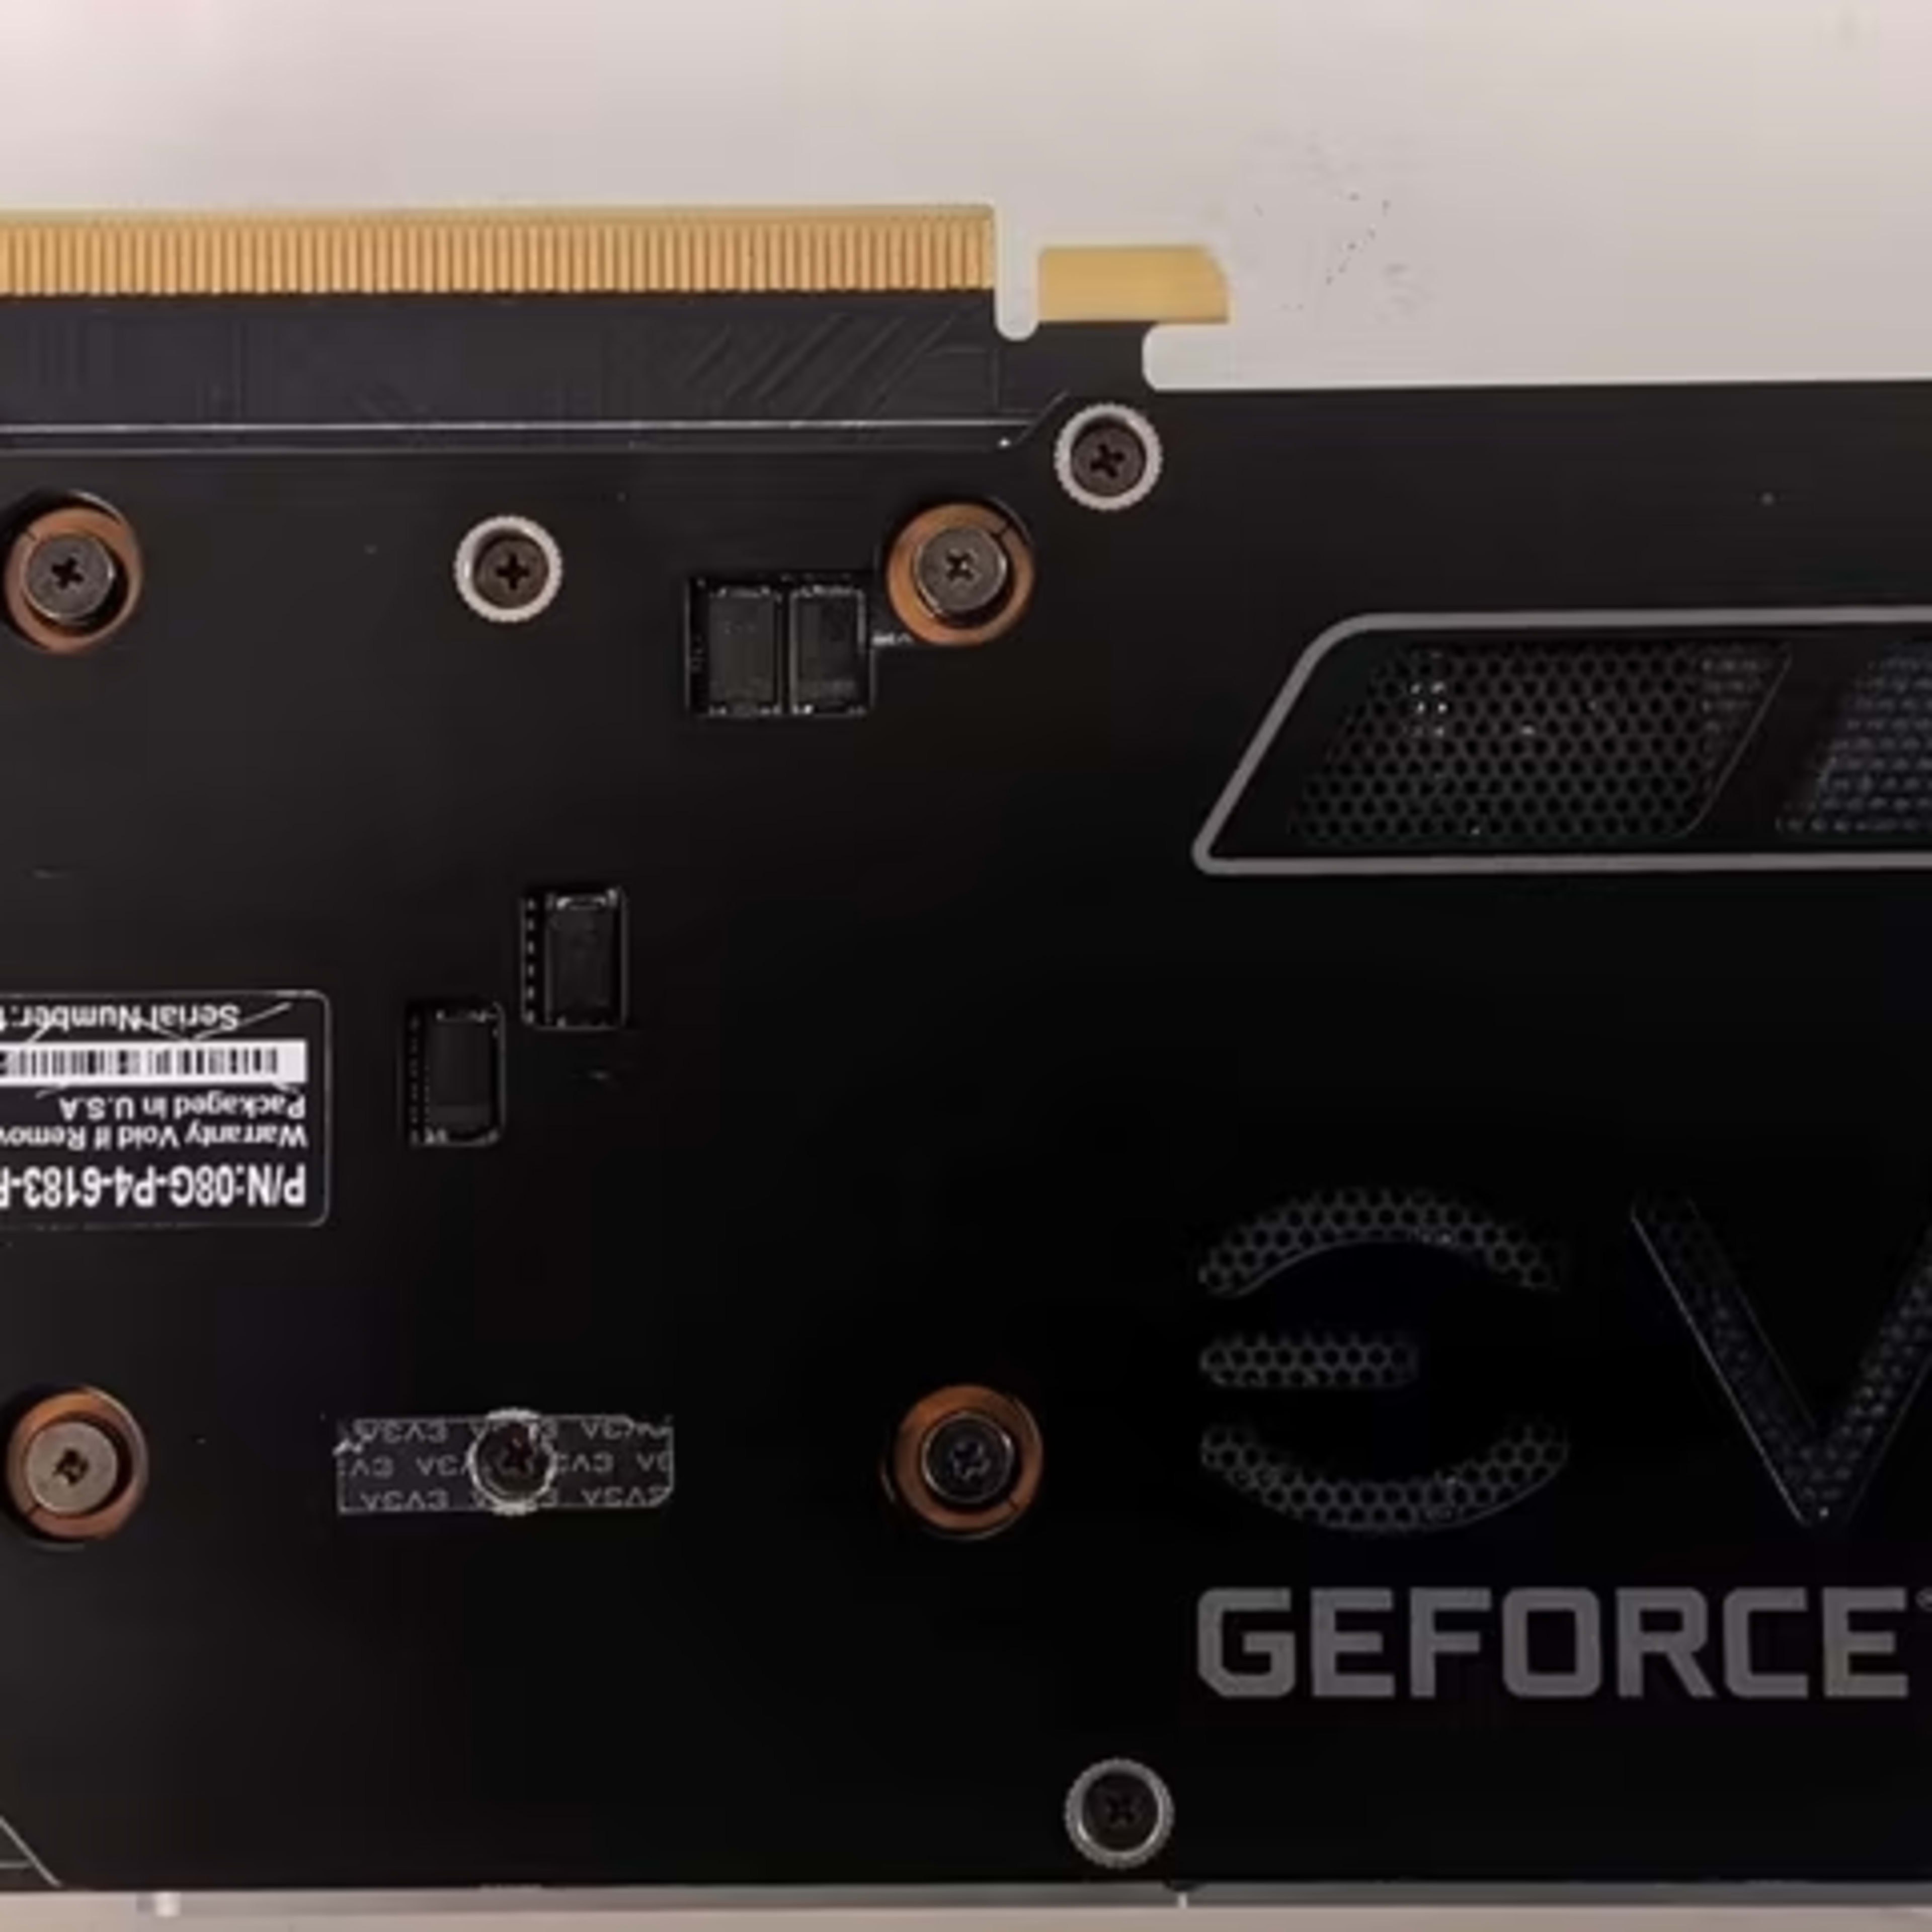 EVGA GeForce GTX 1080 SC GAMING, 08G-P4-6183-RX, 8GB